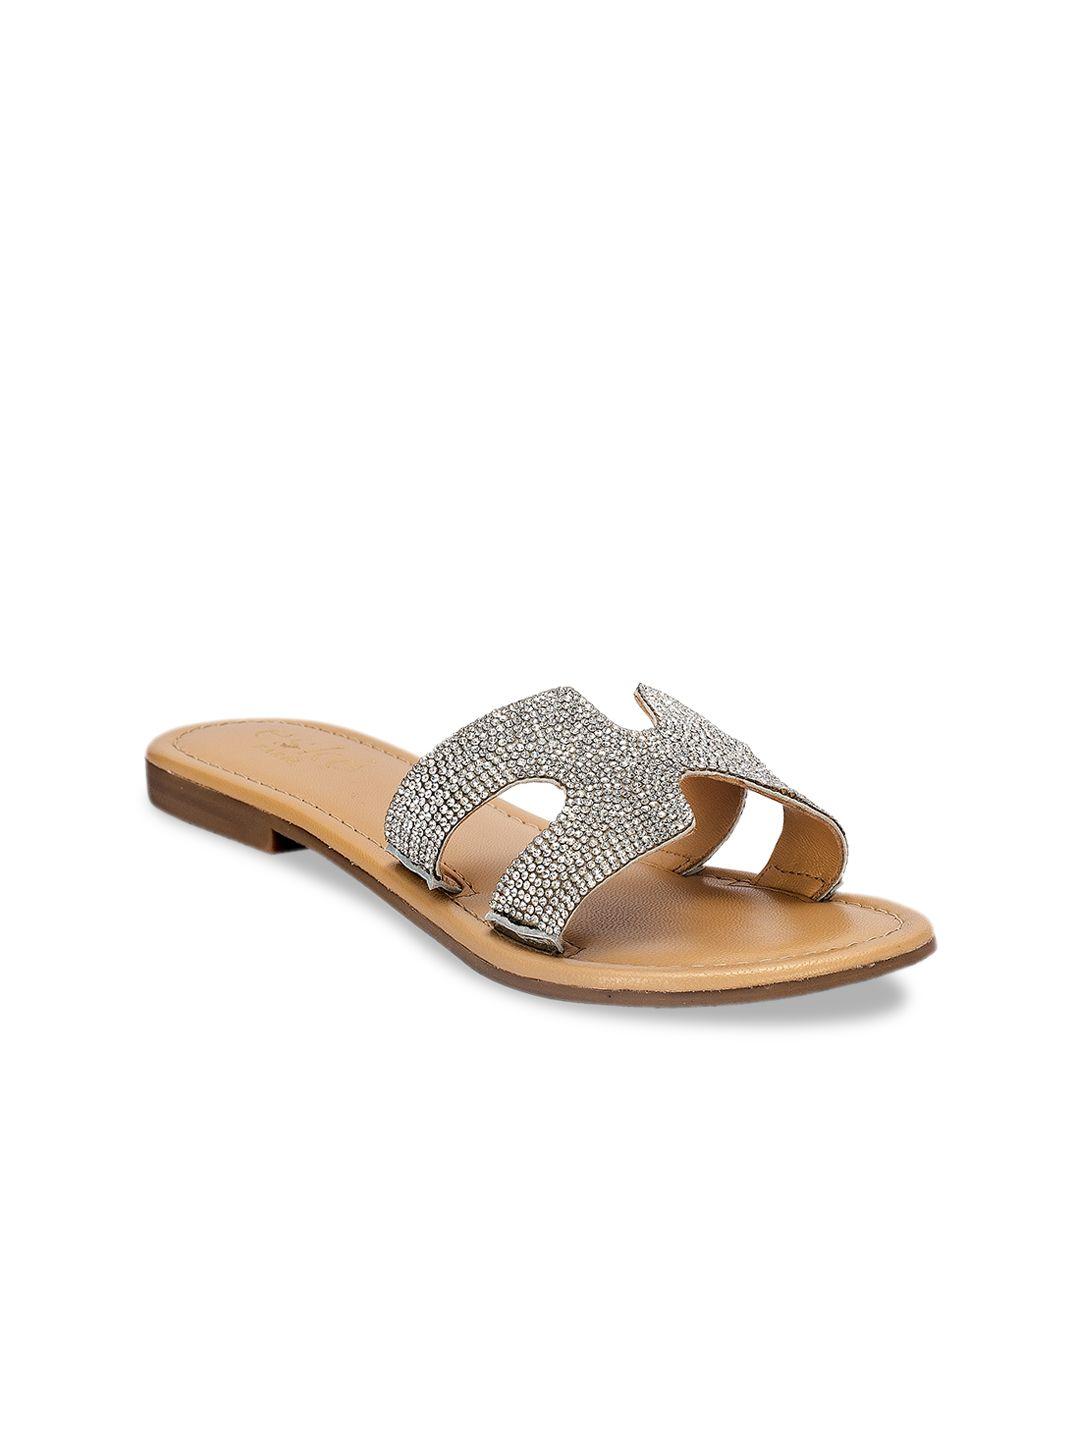 eske women silver-toned embellished leather open toe flats